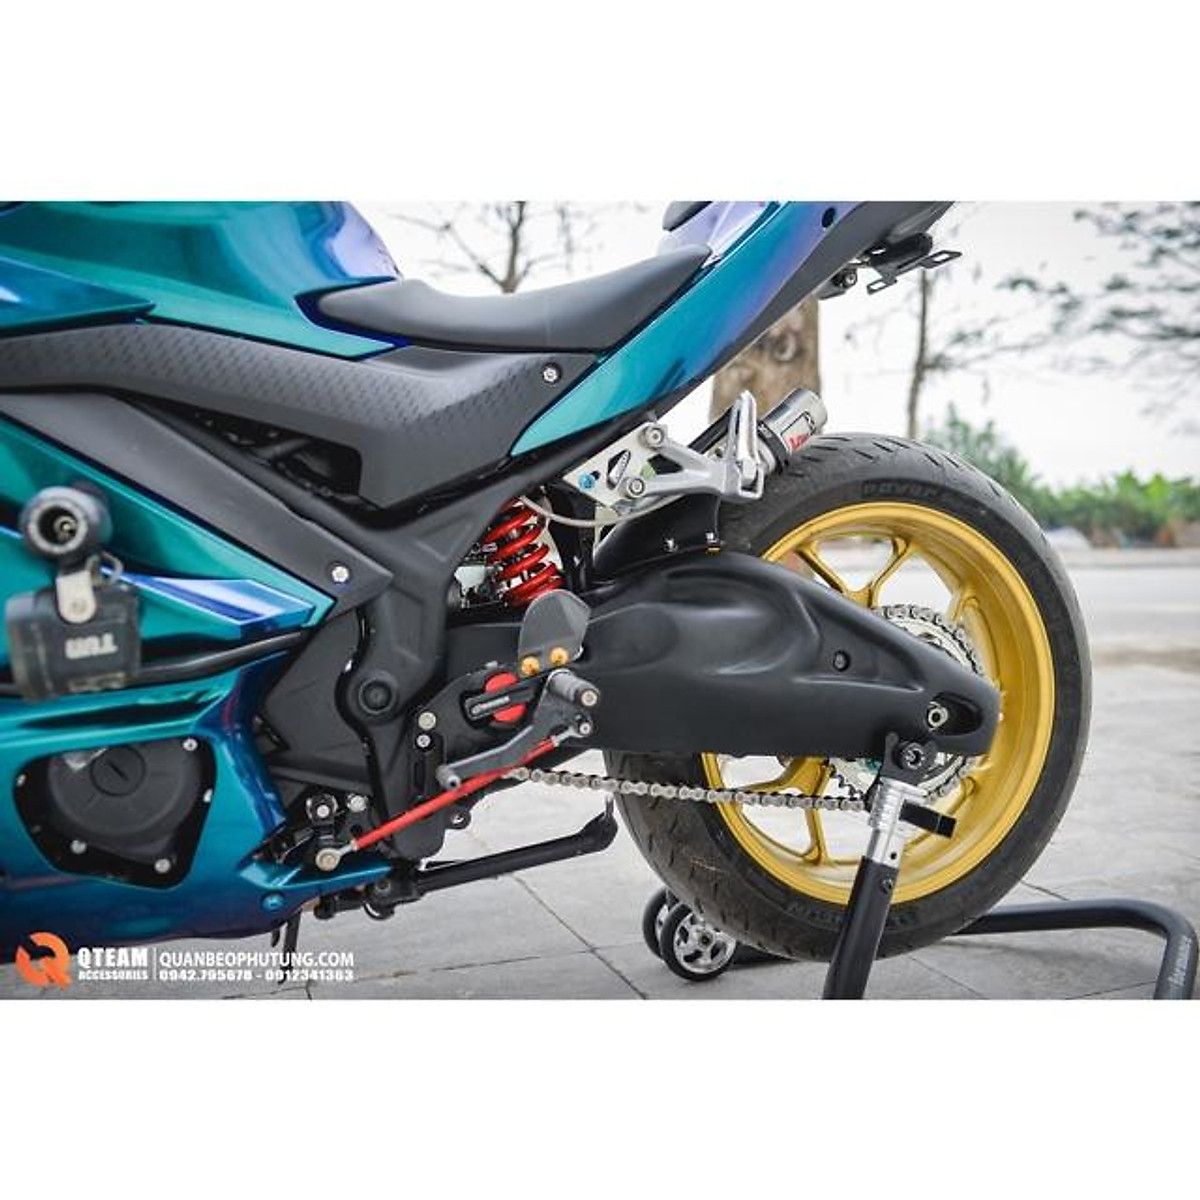 HCMBen nâng xe pkl Moto dòng xe 1 gấp BMW R9T Streetfighter Ducati chống  nâng xe bánh sau hãng MBike  Lazadavn